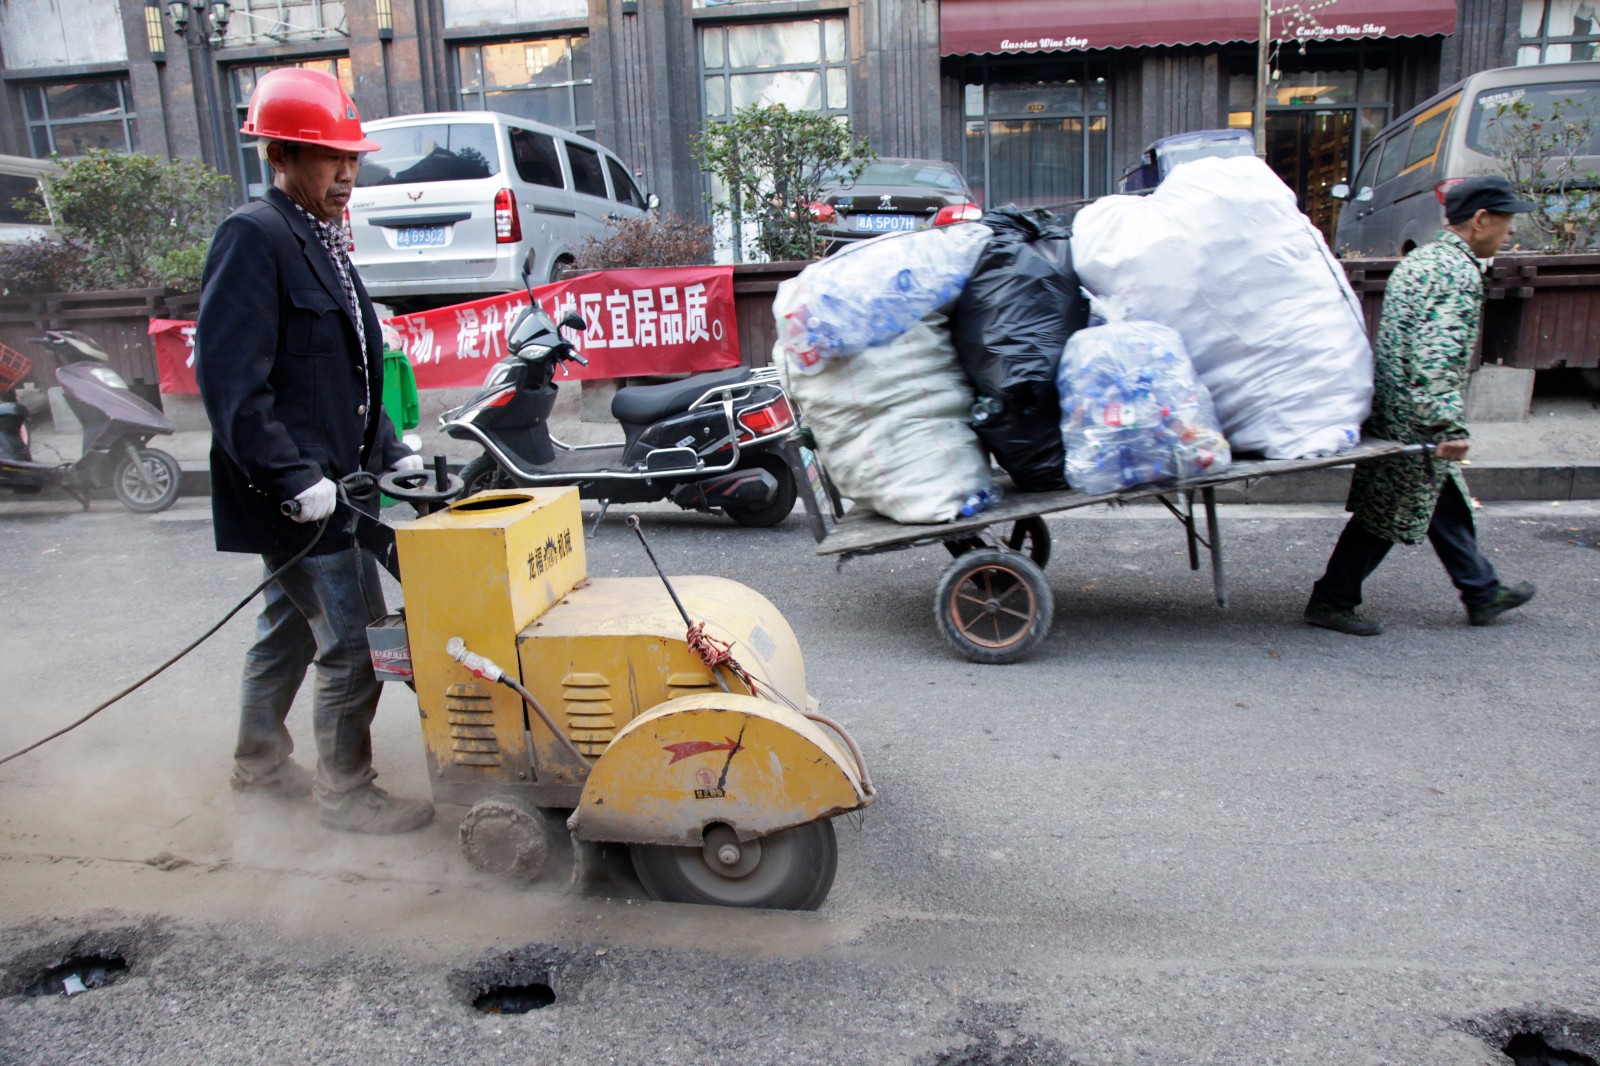 一名工人正在进行路面切割作业，旁边一名拉着一车废品的老人匆匆而过。